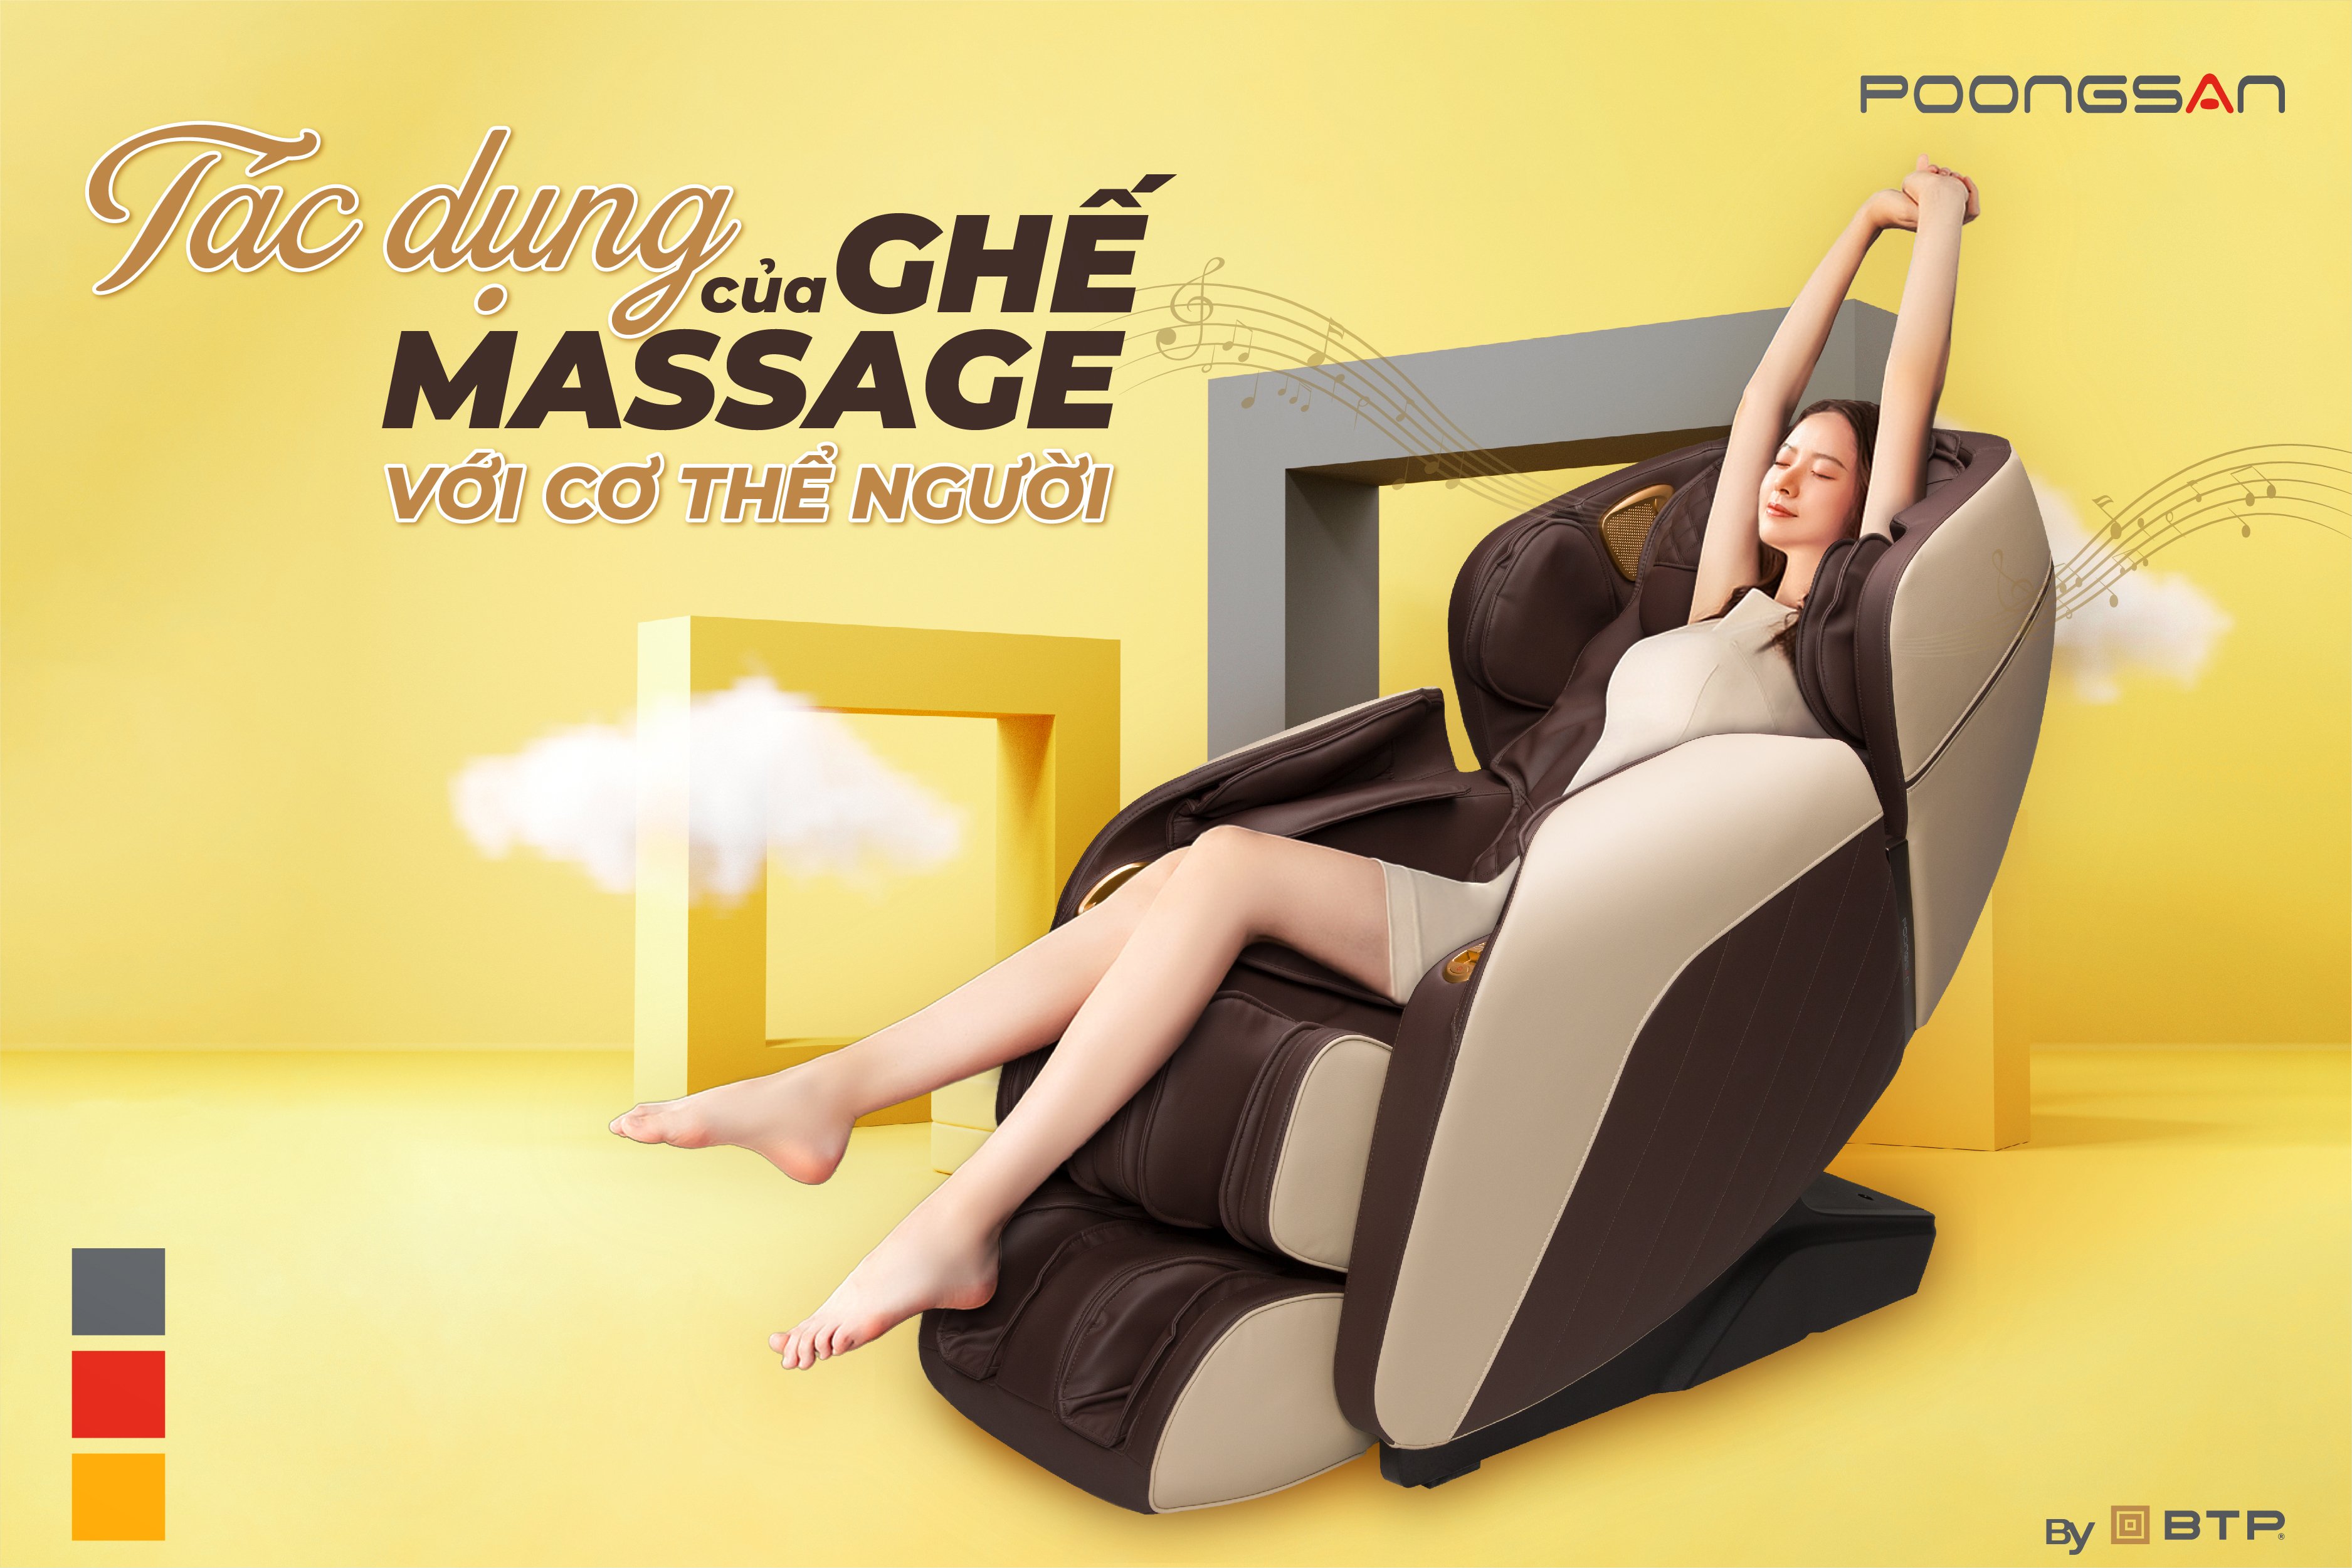 Tác dụng của ghế massage đối với cơ thể người